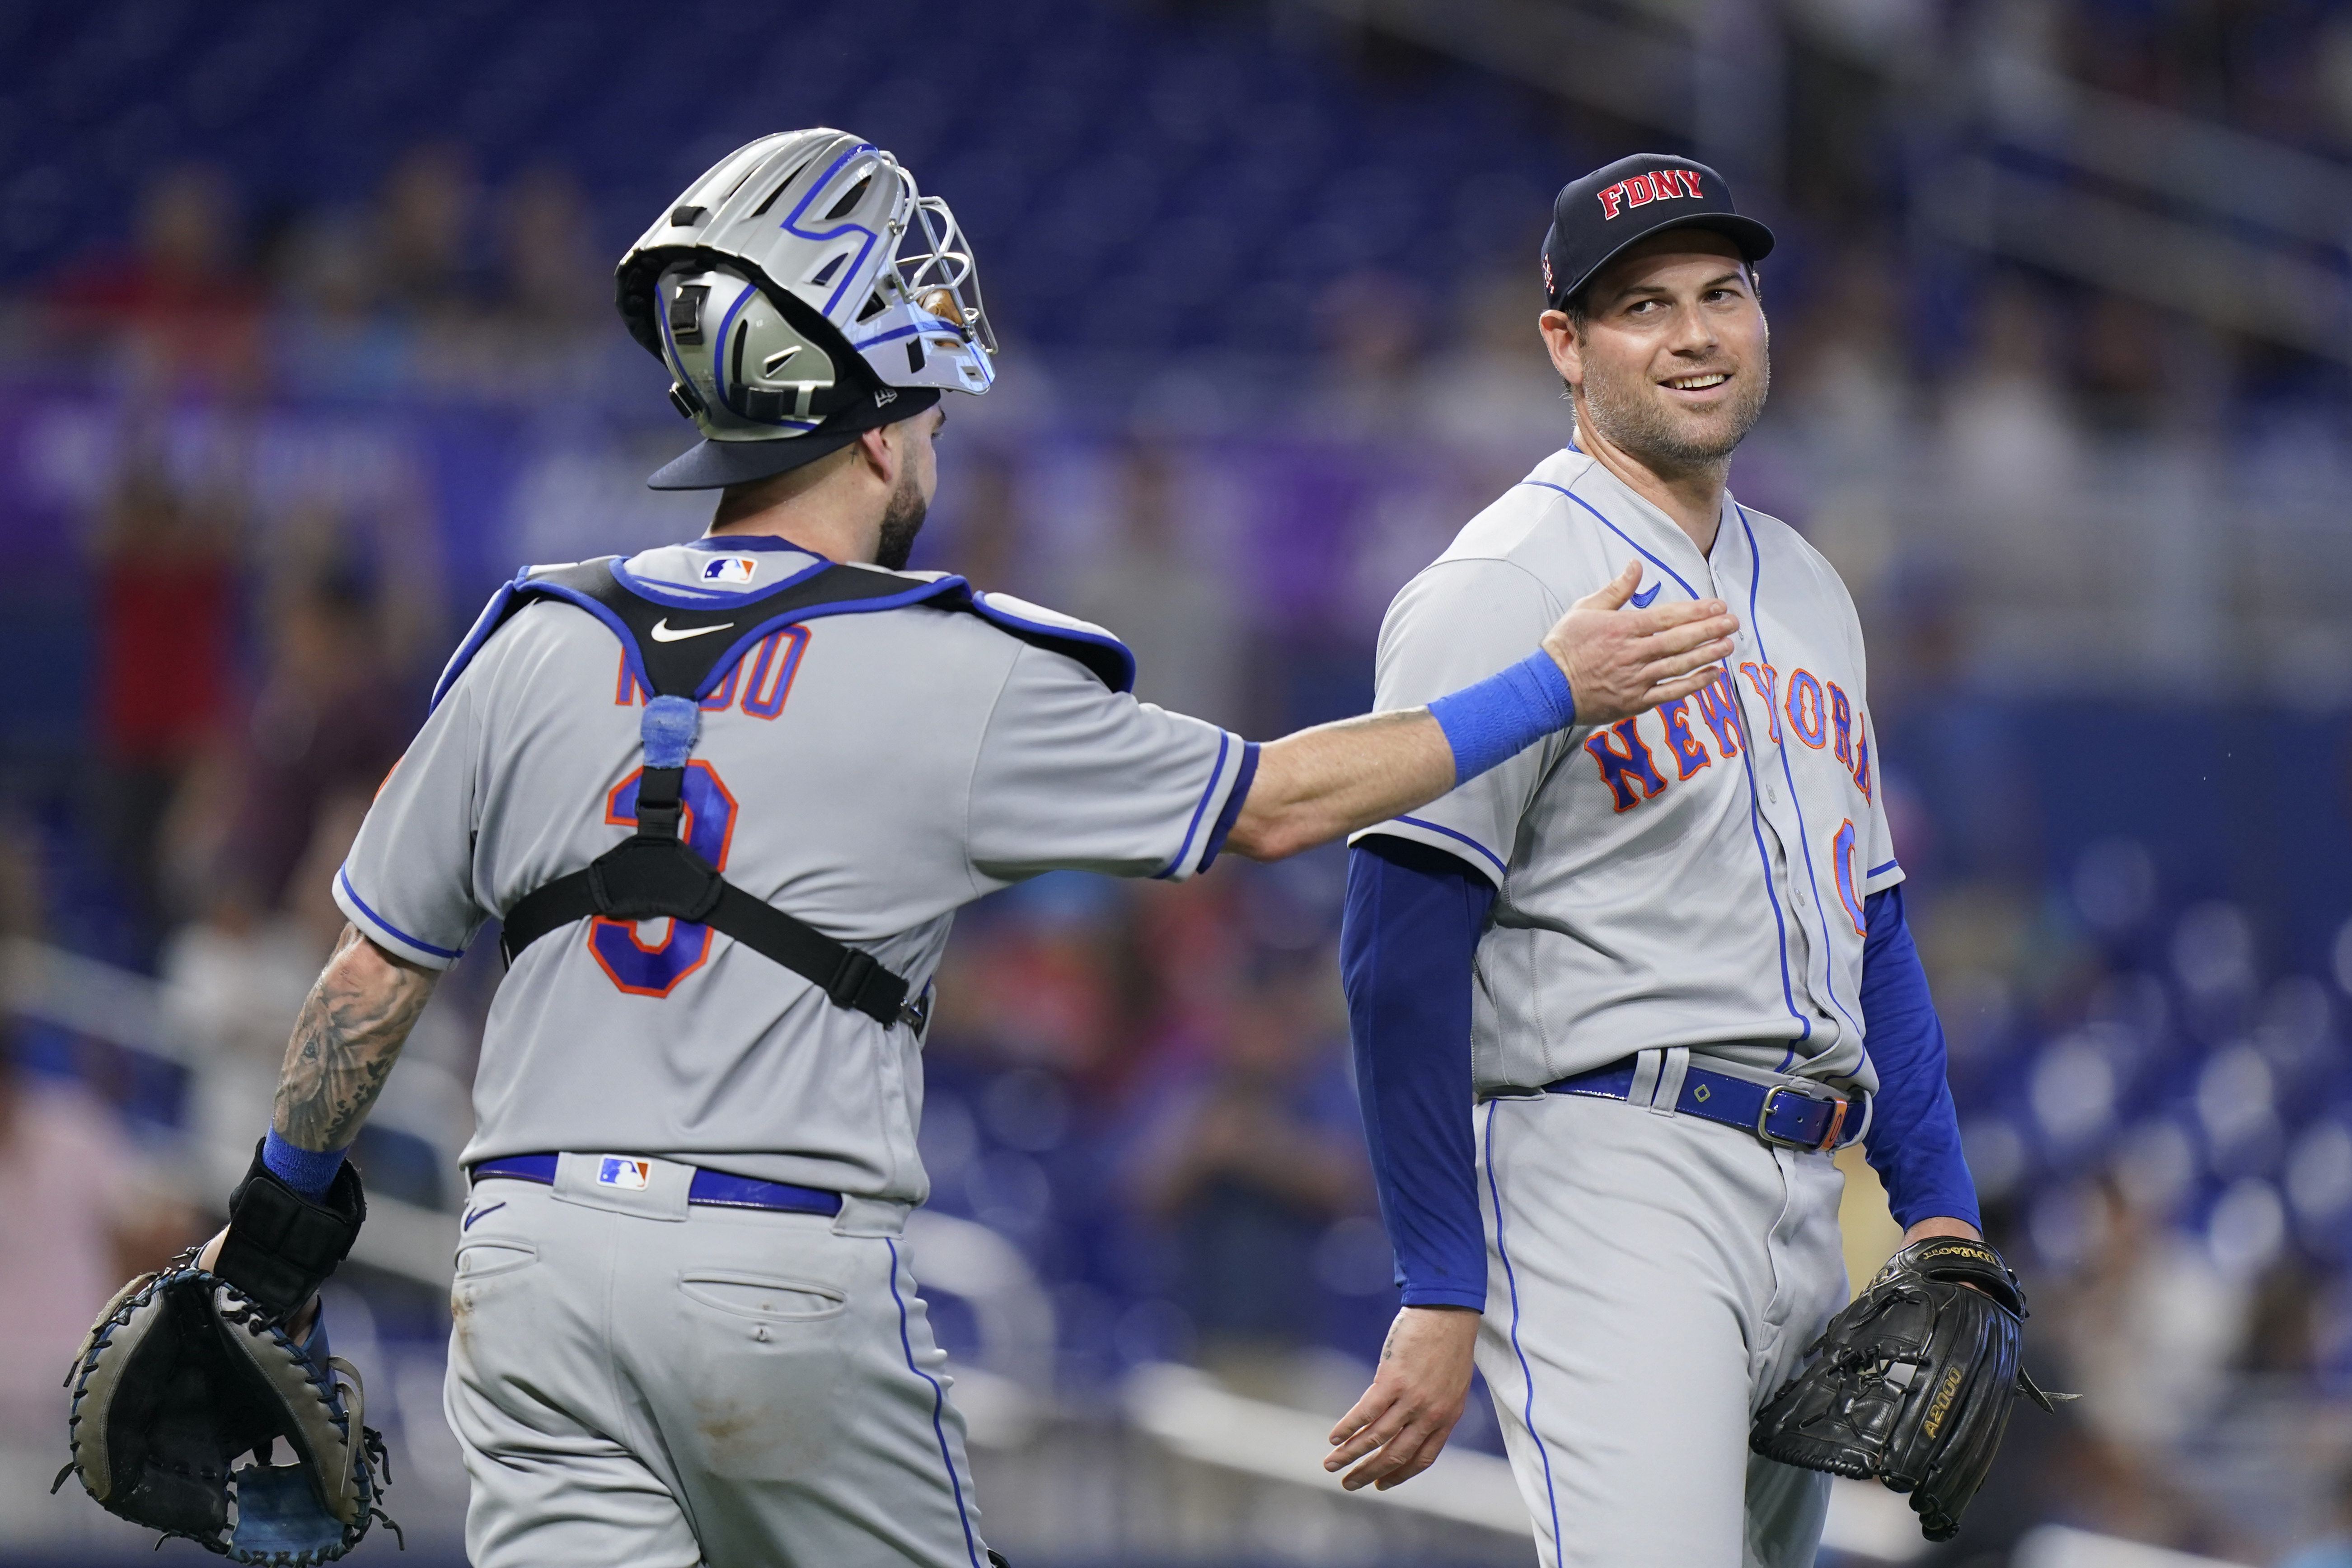 NY Mets at MLB Winter Meetings: Free agents, trade news, signings